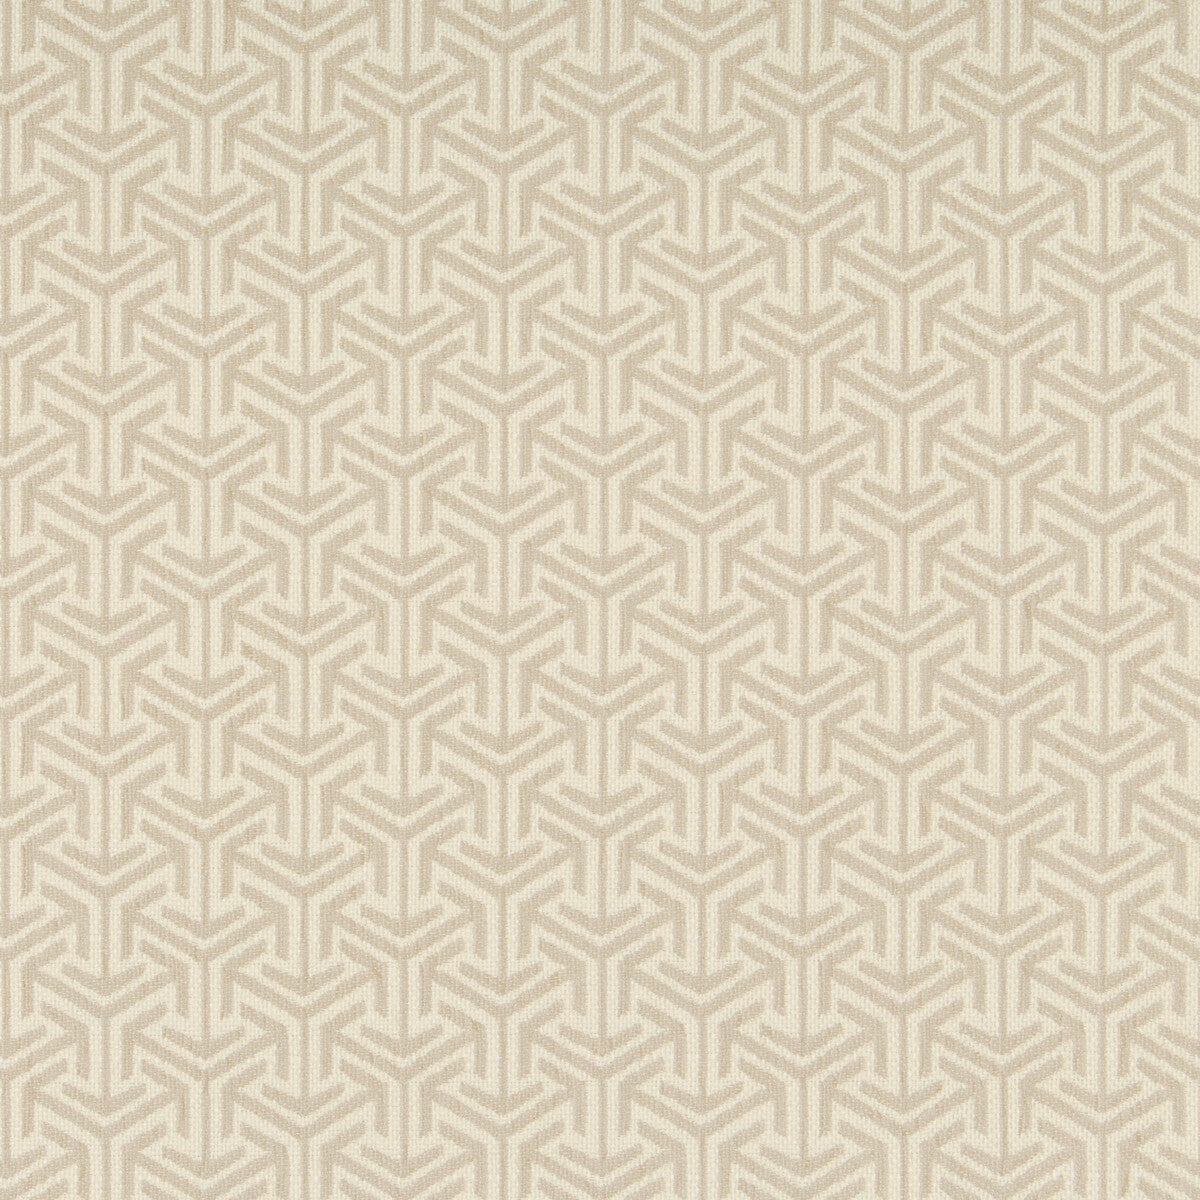 Kravet Design fabric in 35715-106 color - pattern 35715.106.0 - by Kravet Design